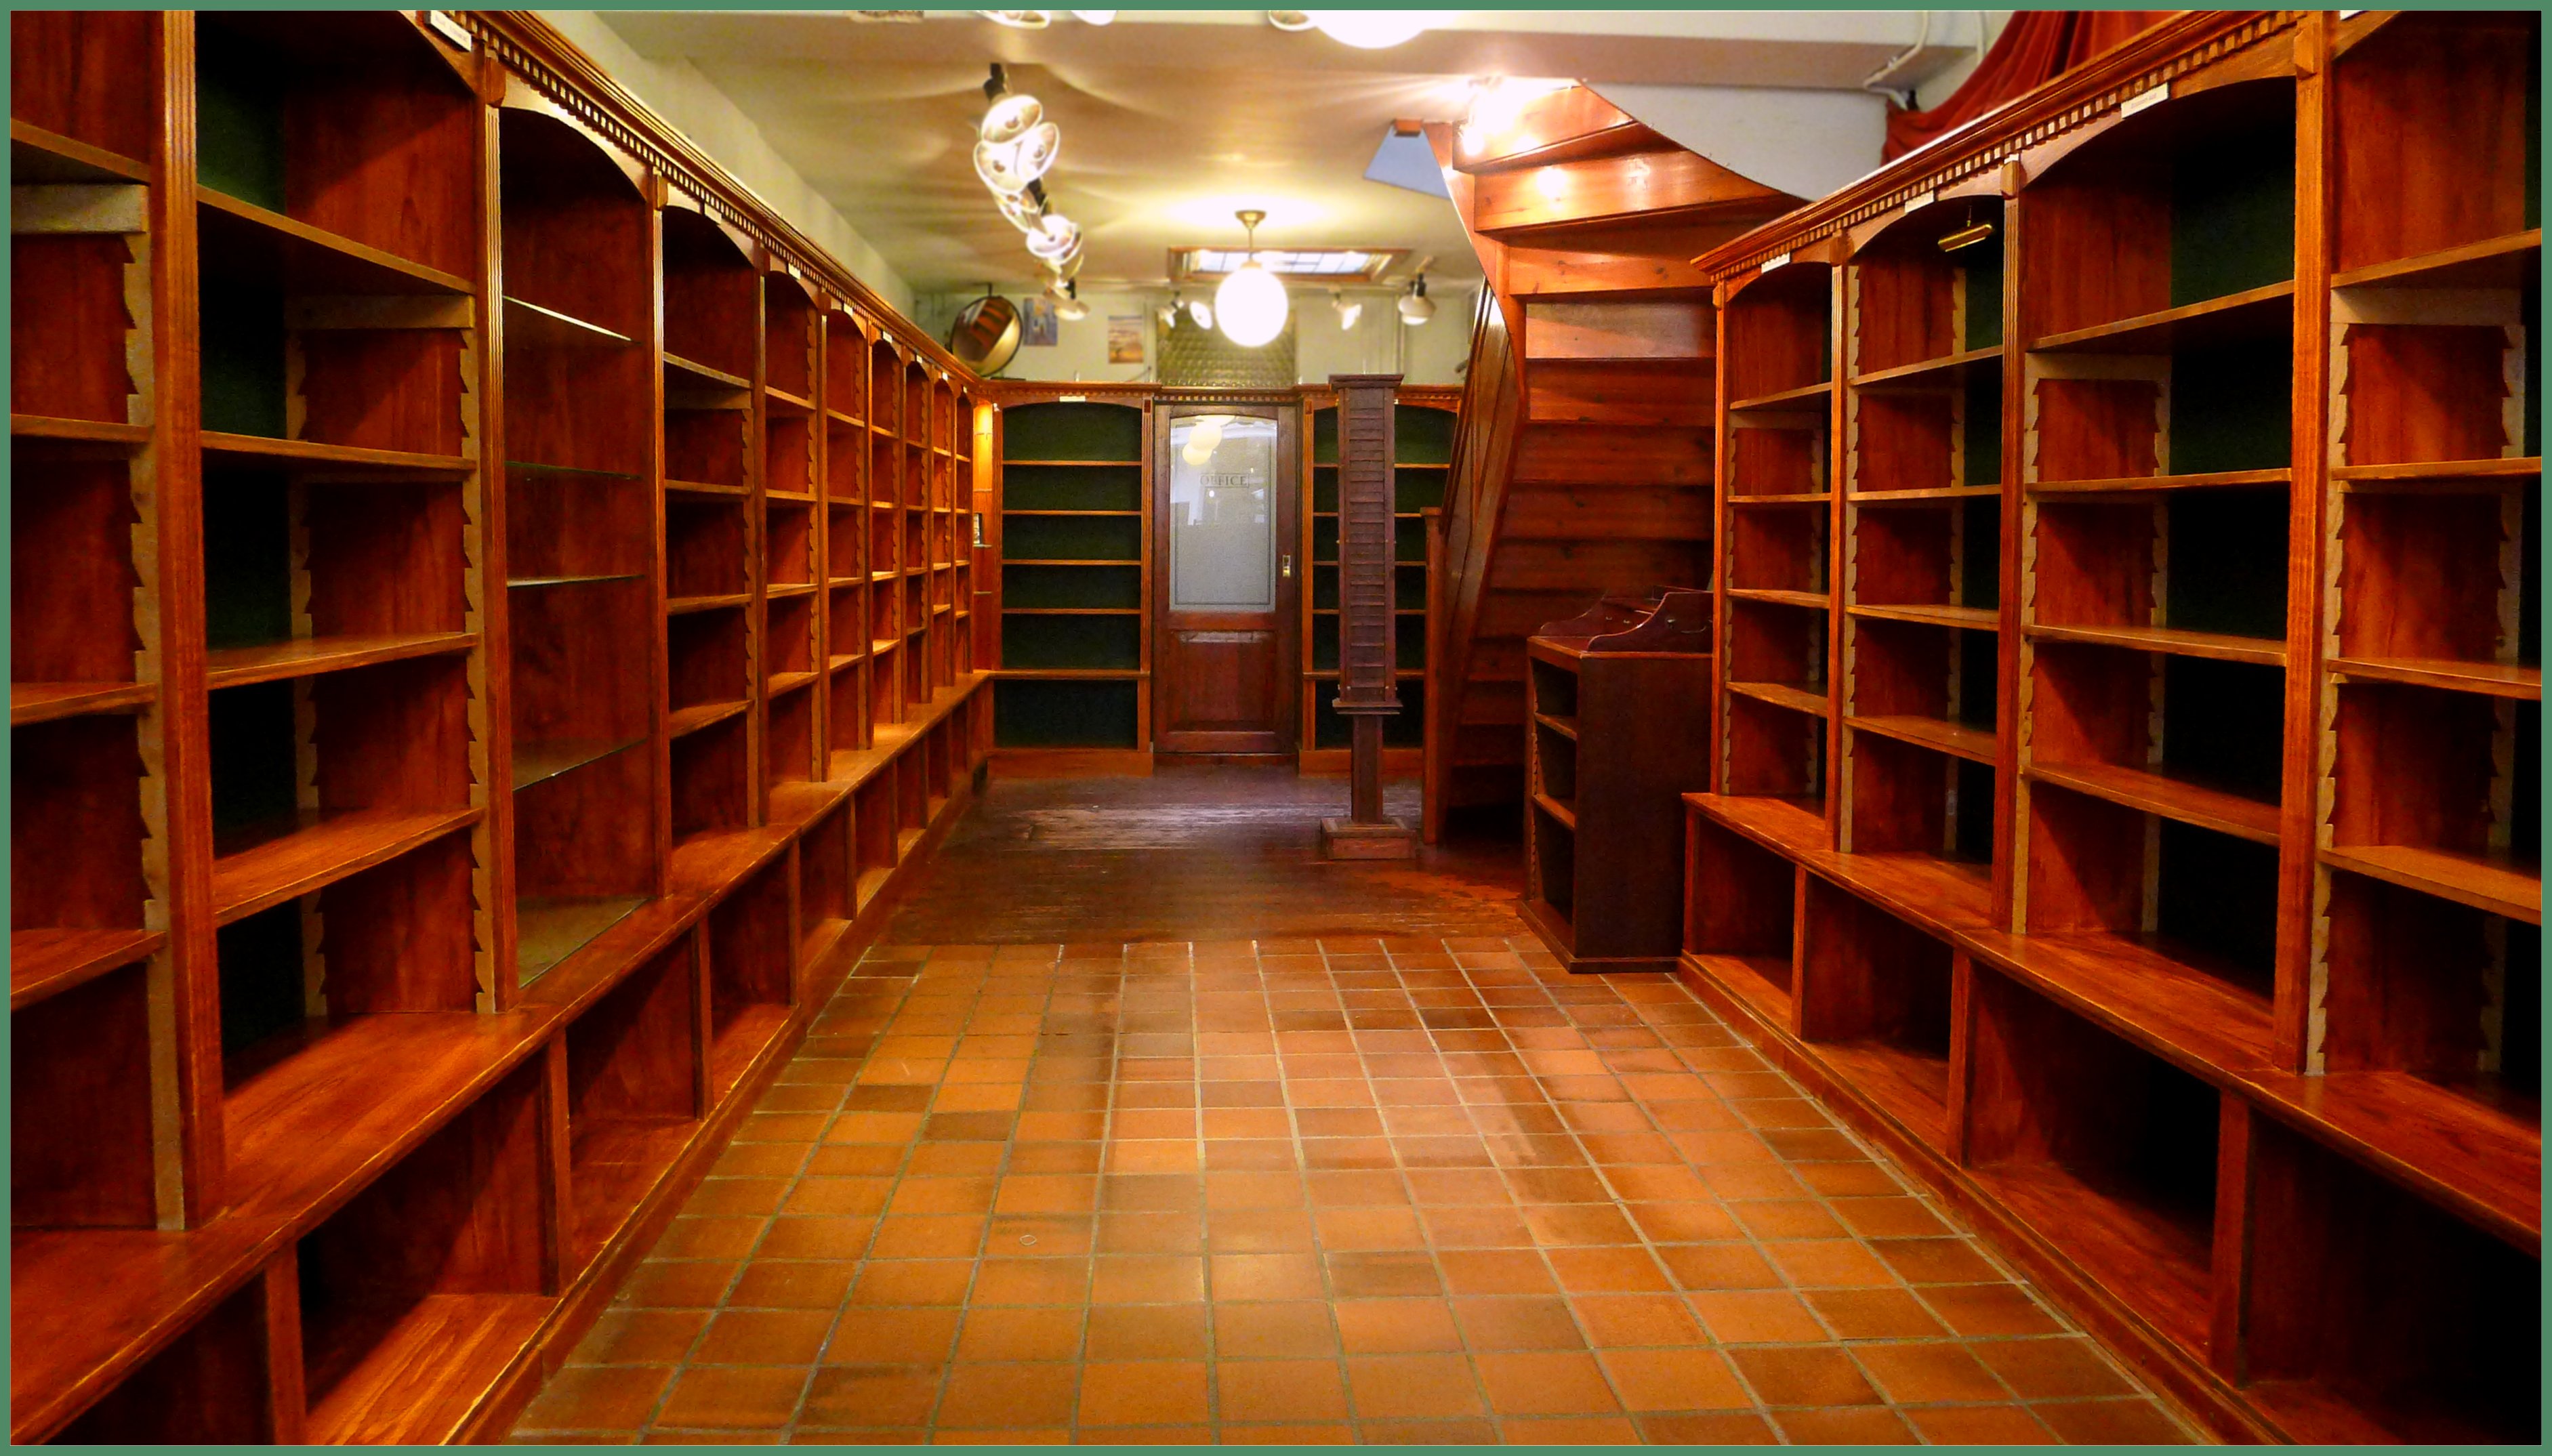 Stanley&Livingstone on Twitter: "Boekenkasten koop Stanley Livingstone https://t.co/UdDSUeS34p via @YouTube Reisboekhandel is naar de Herengracht 60 in Den Haag. NU komt het interieur van onze oude winkel te koop. Wie